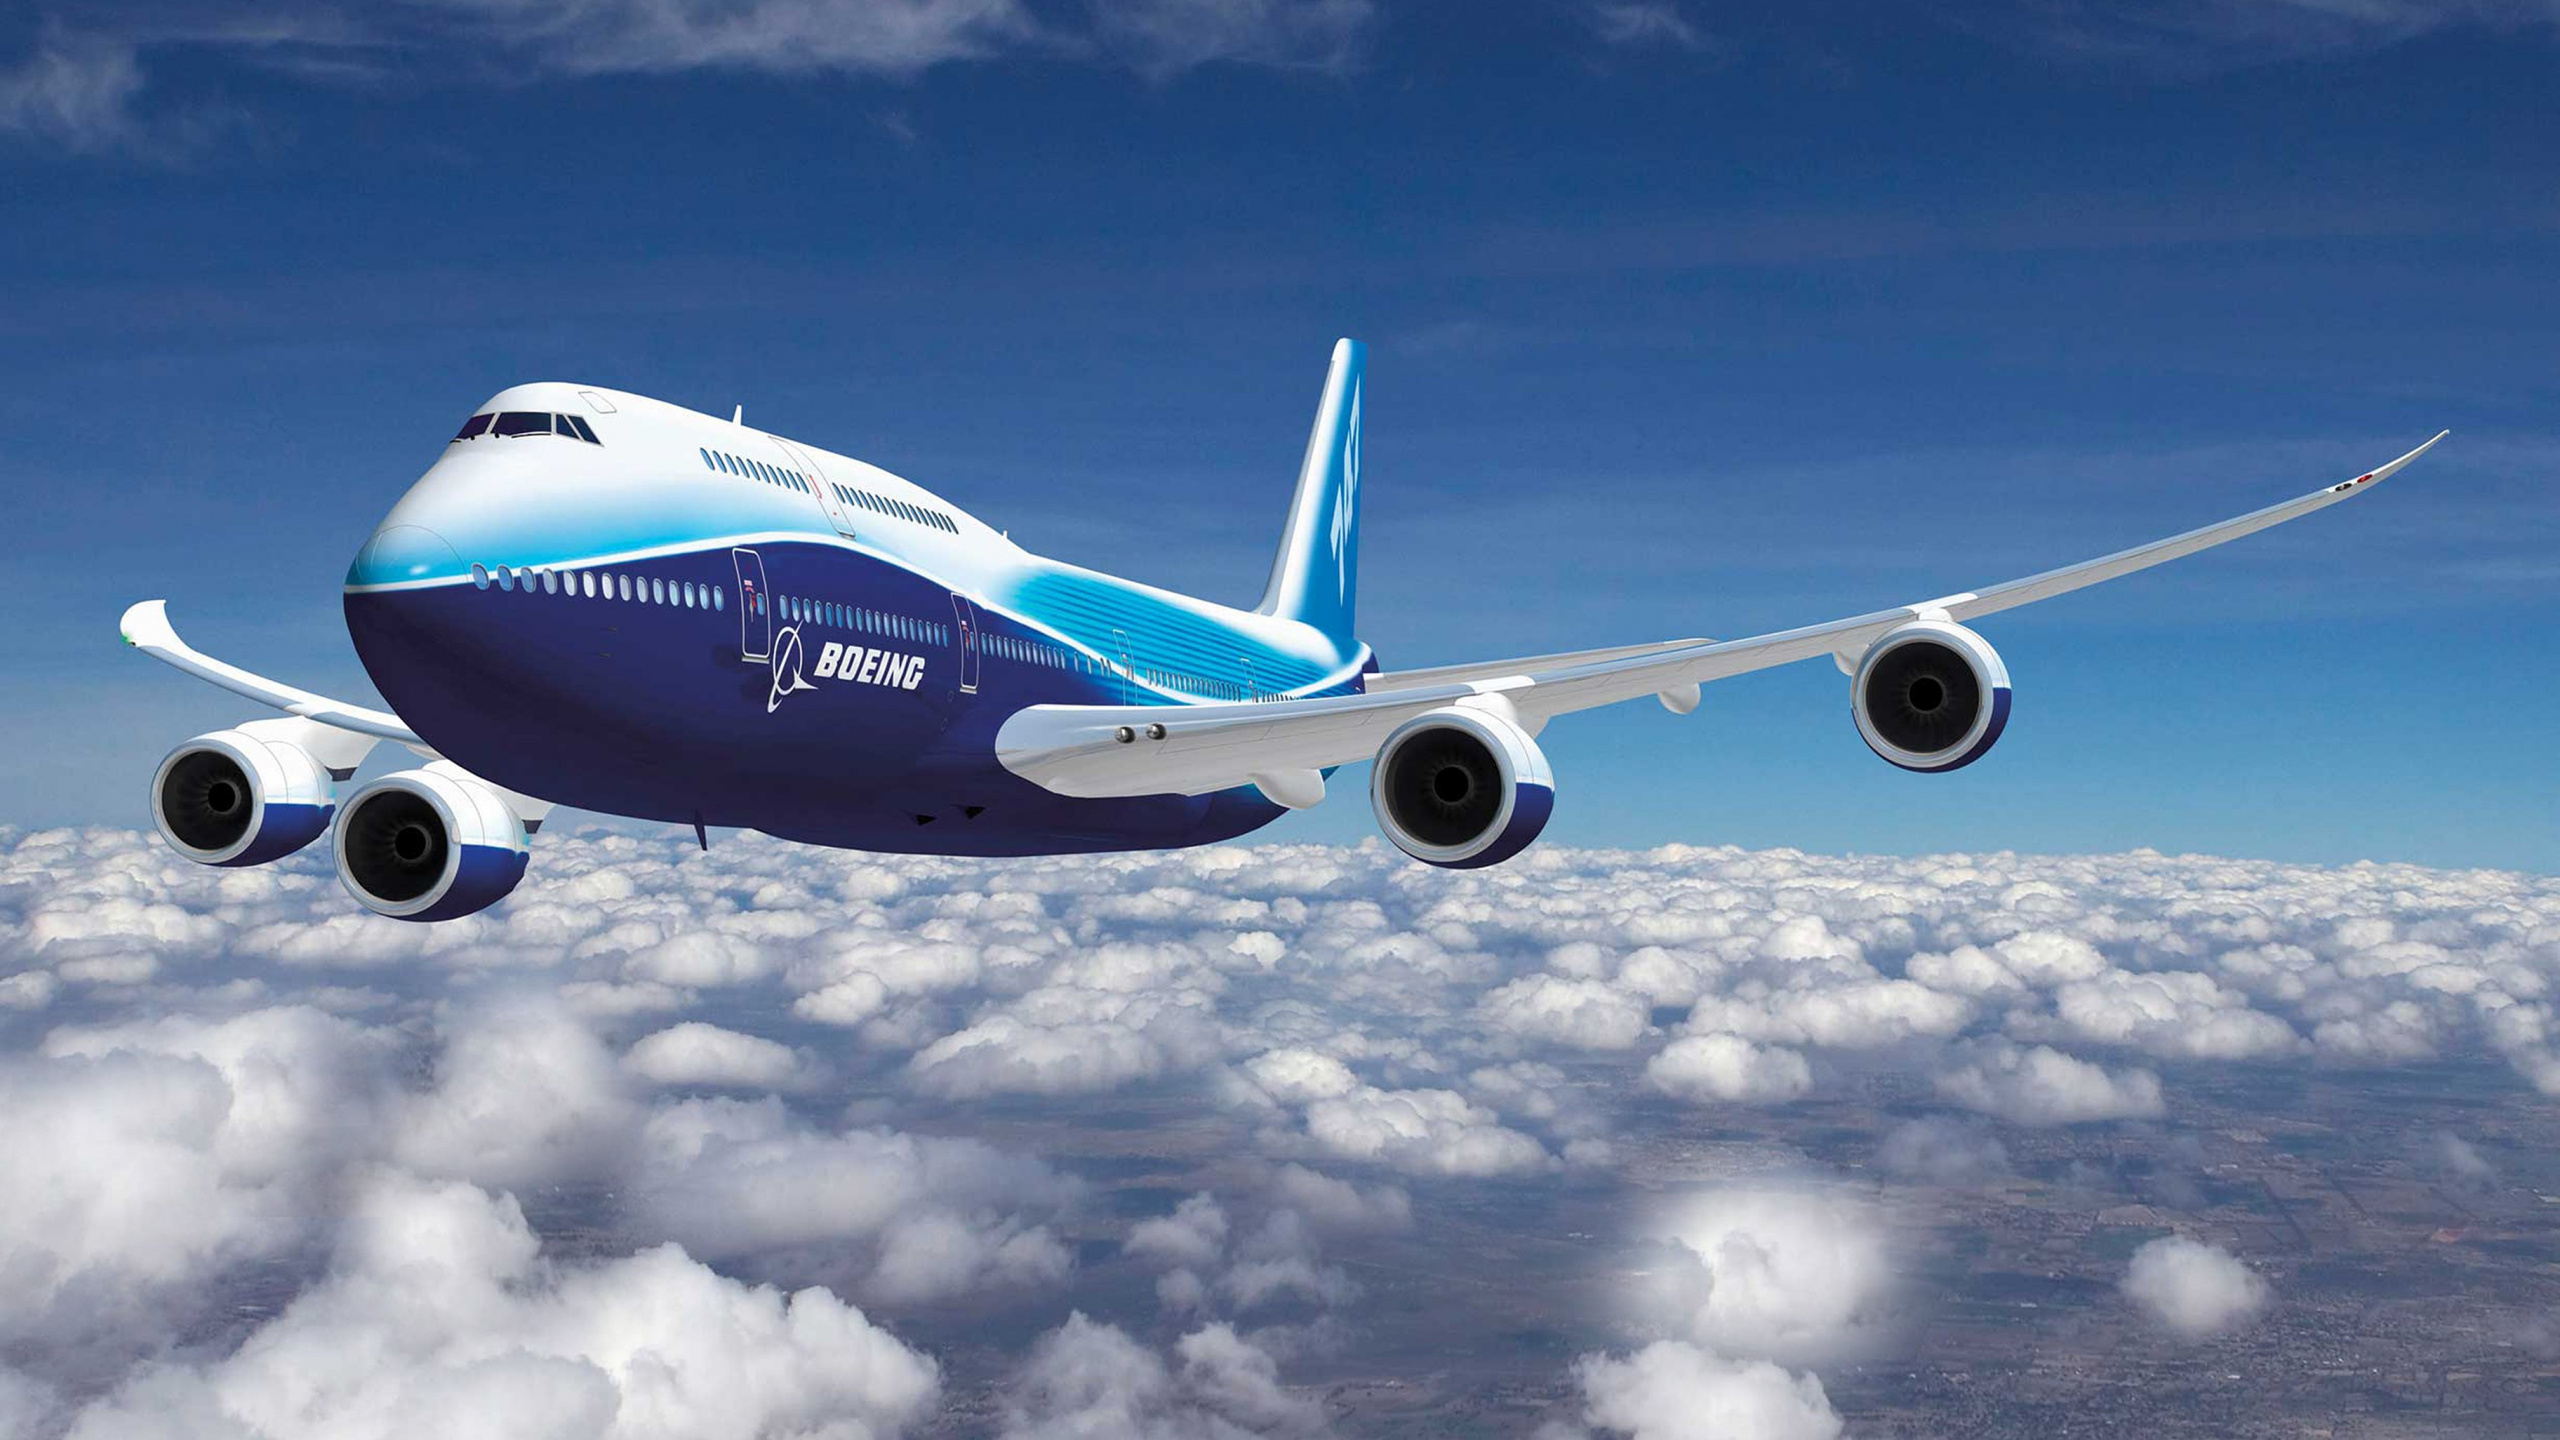 Weißes Und Blaues Flugzeug, Das Tagsüber Unter Blauem Himmel Fliegt. Wallpaper in 2560x1440 Resolution